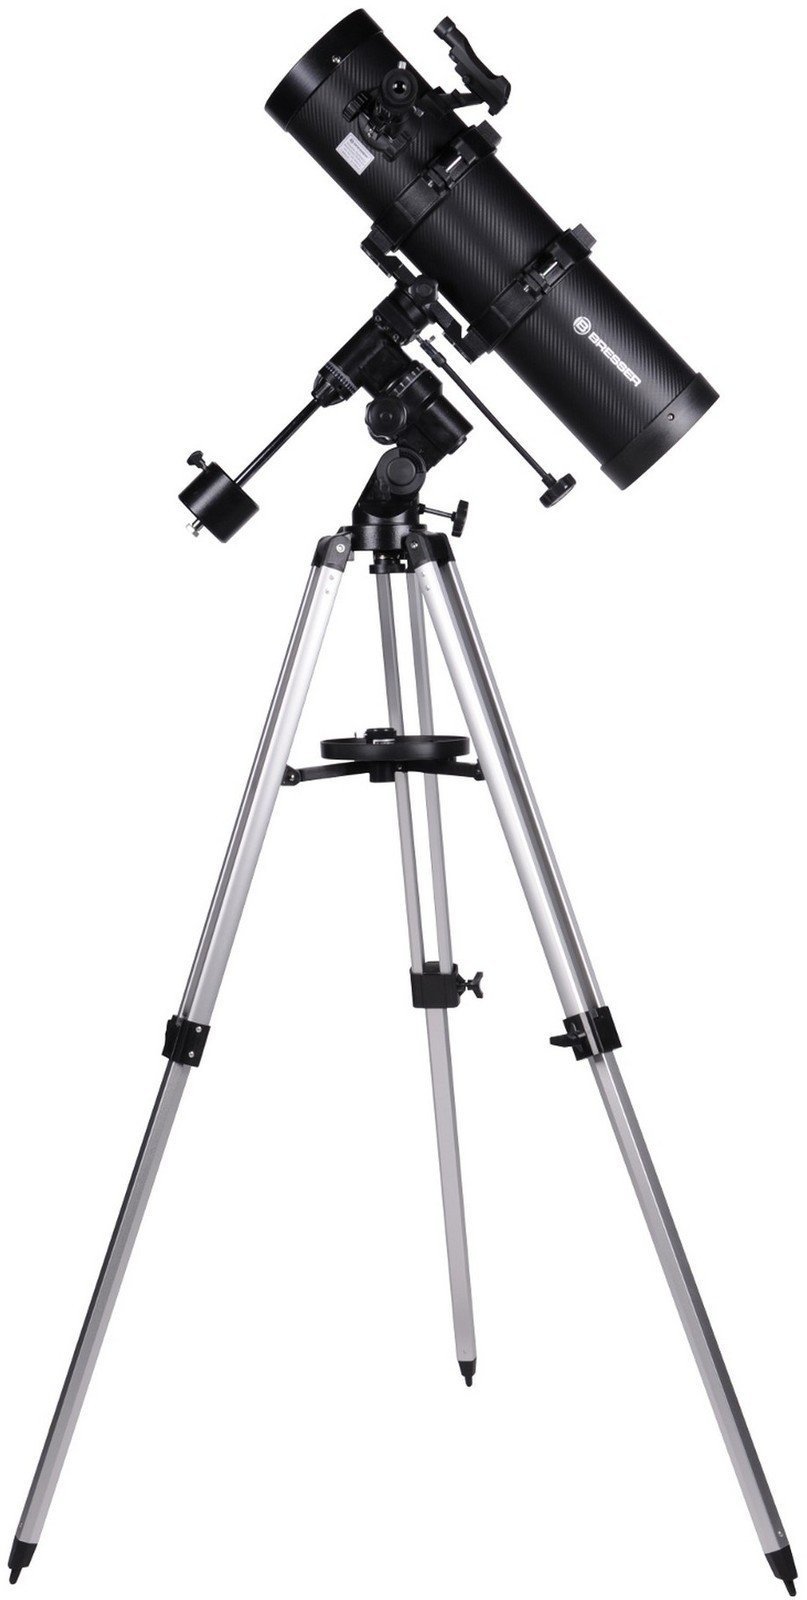 Τηλεσκόπιο Bresser Spica 130/650 EQ3 Telescopewith smartphone adapter